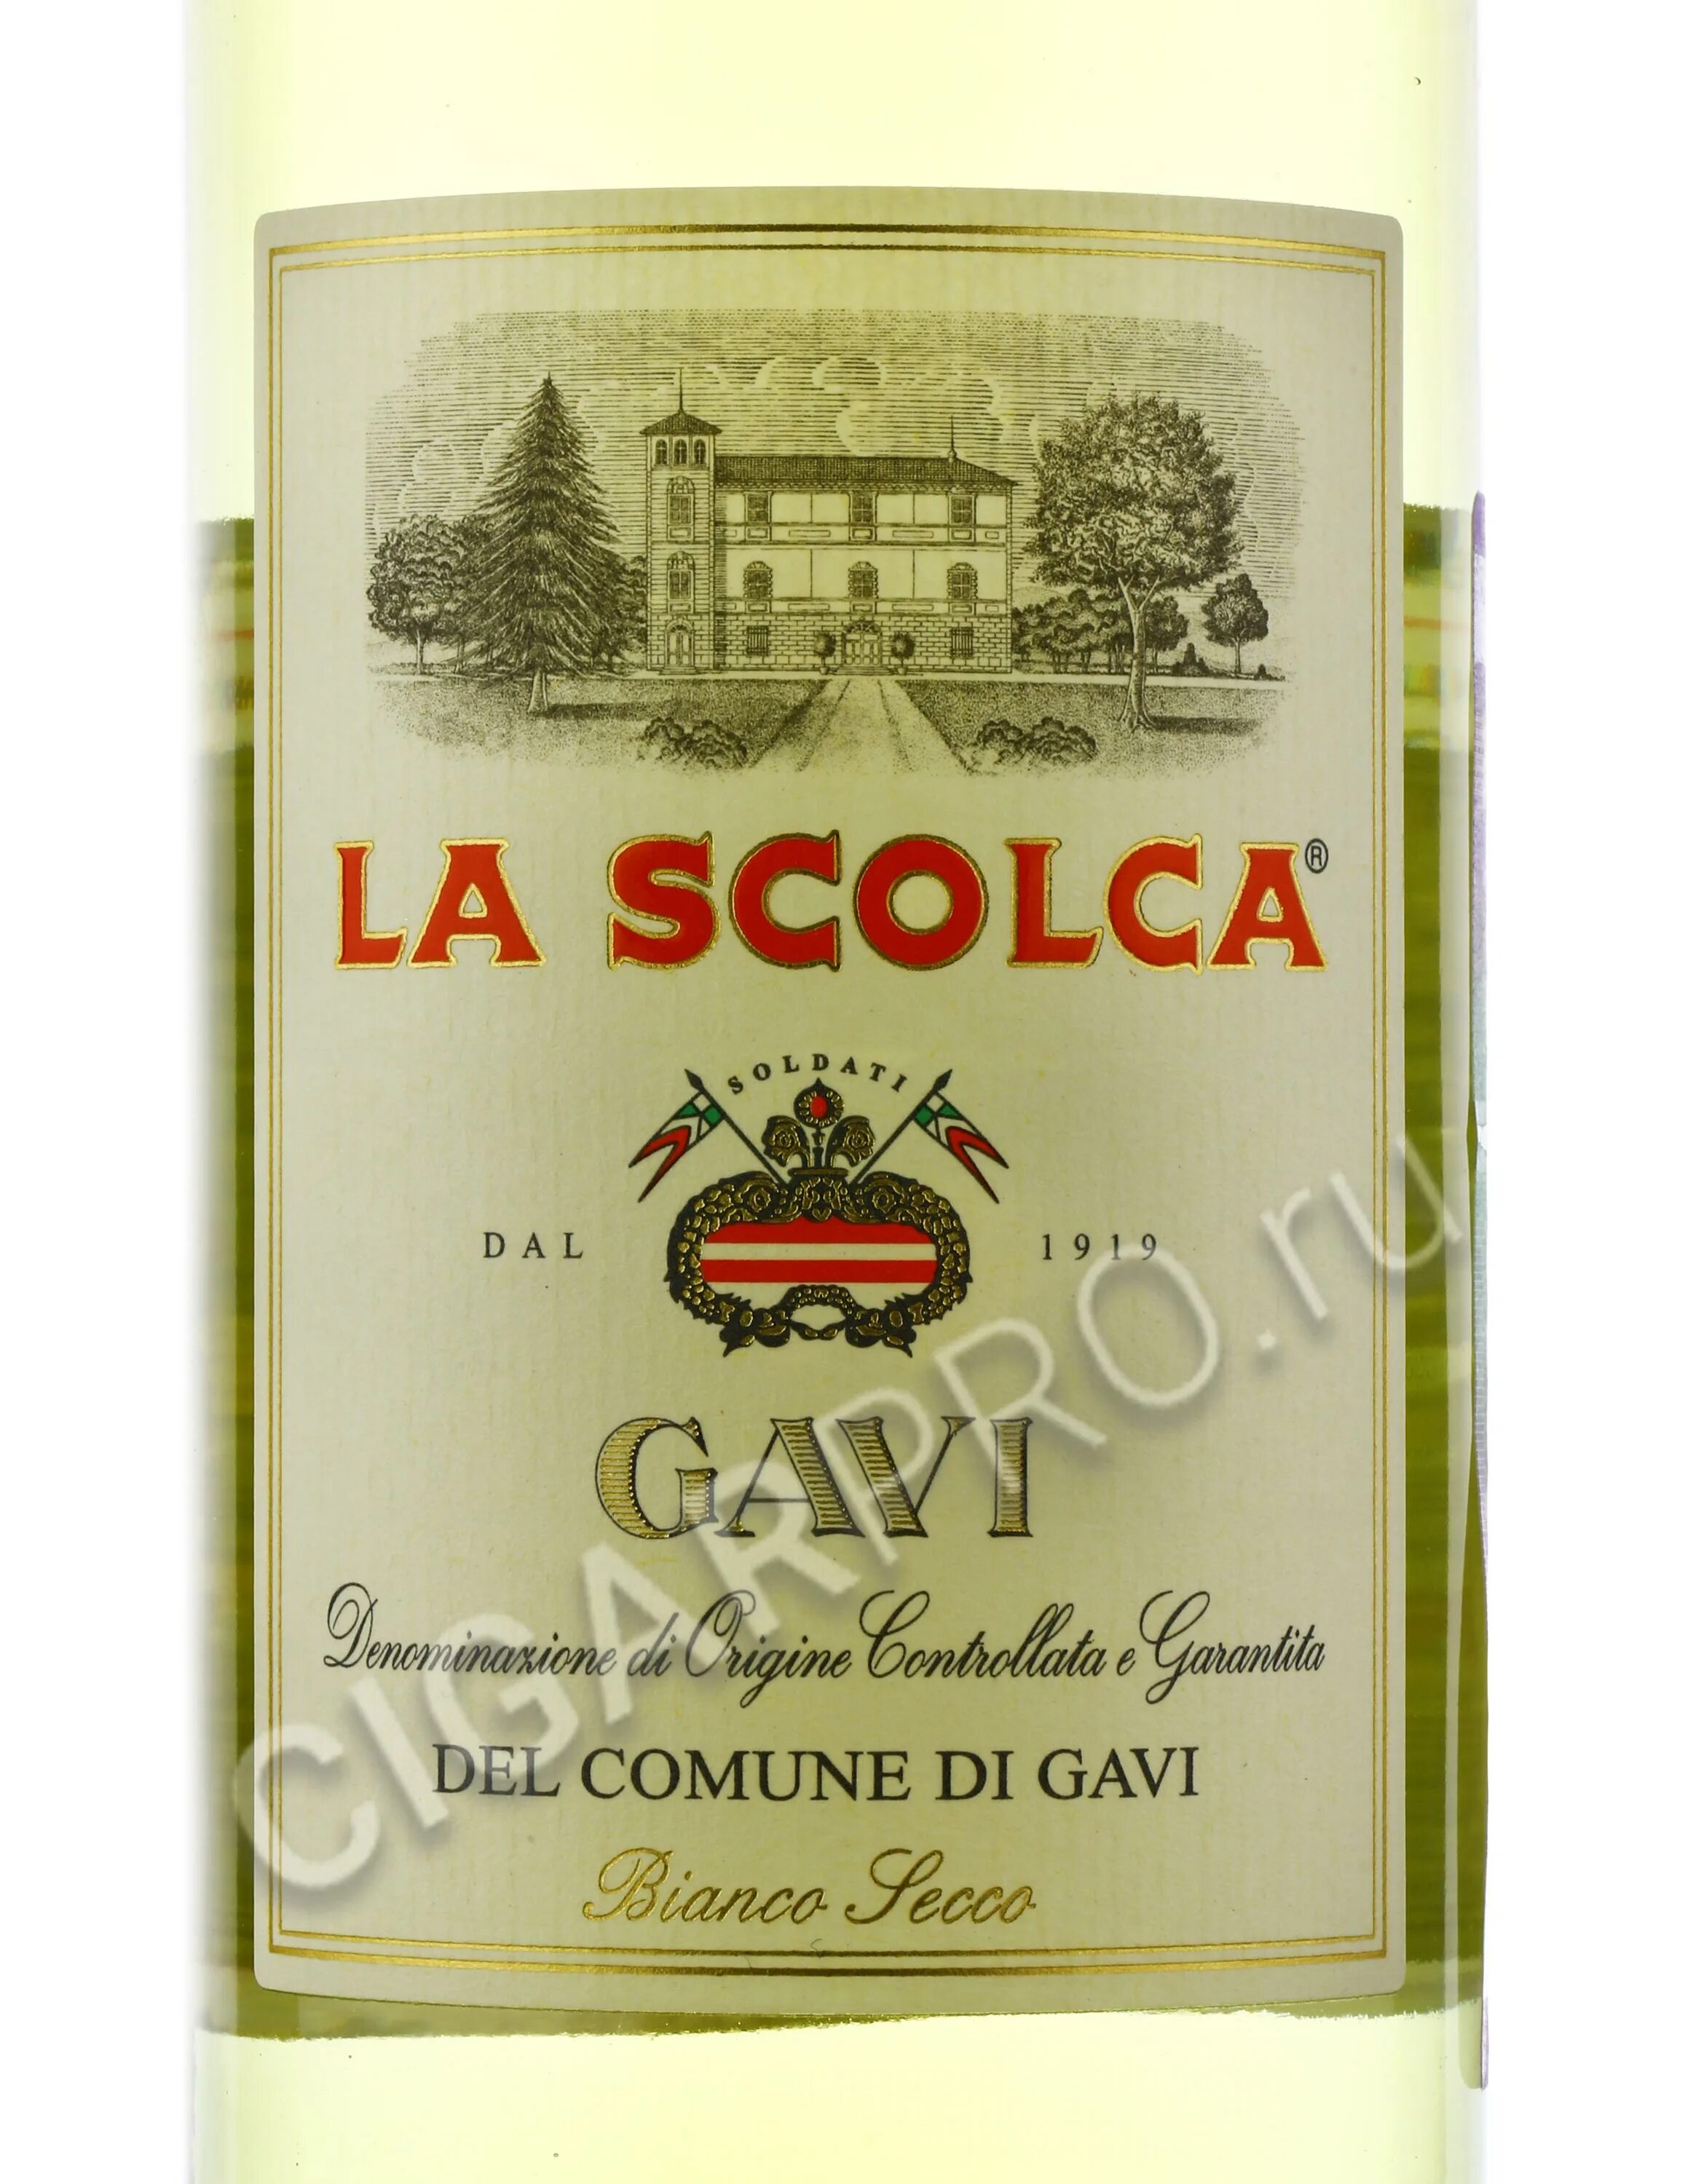 La scolca вино цена. Вино la Scolca. Вино la Scolca Gavi. La Scolca Gold Gavi. Вино Gavi dei Gavi.